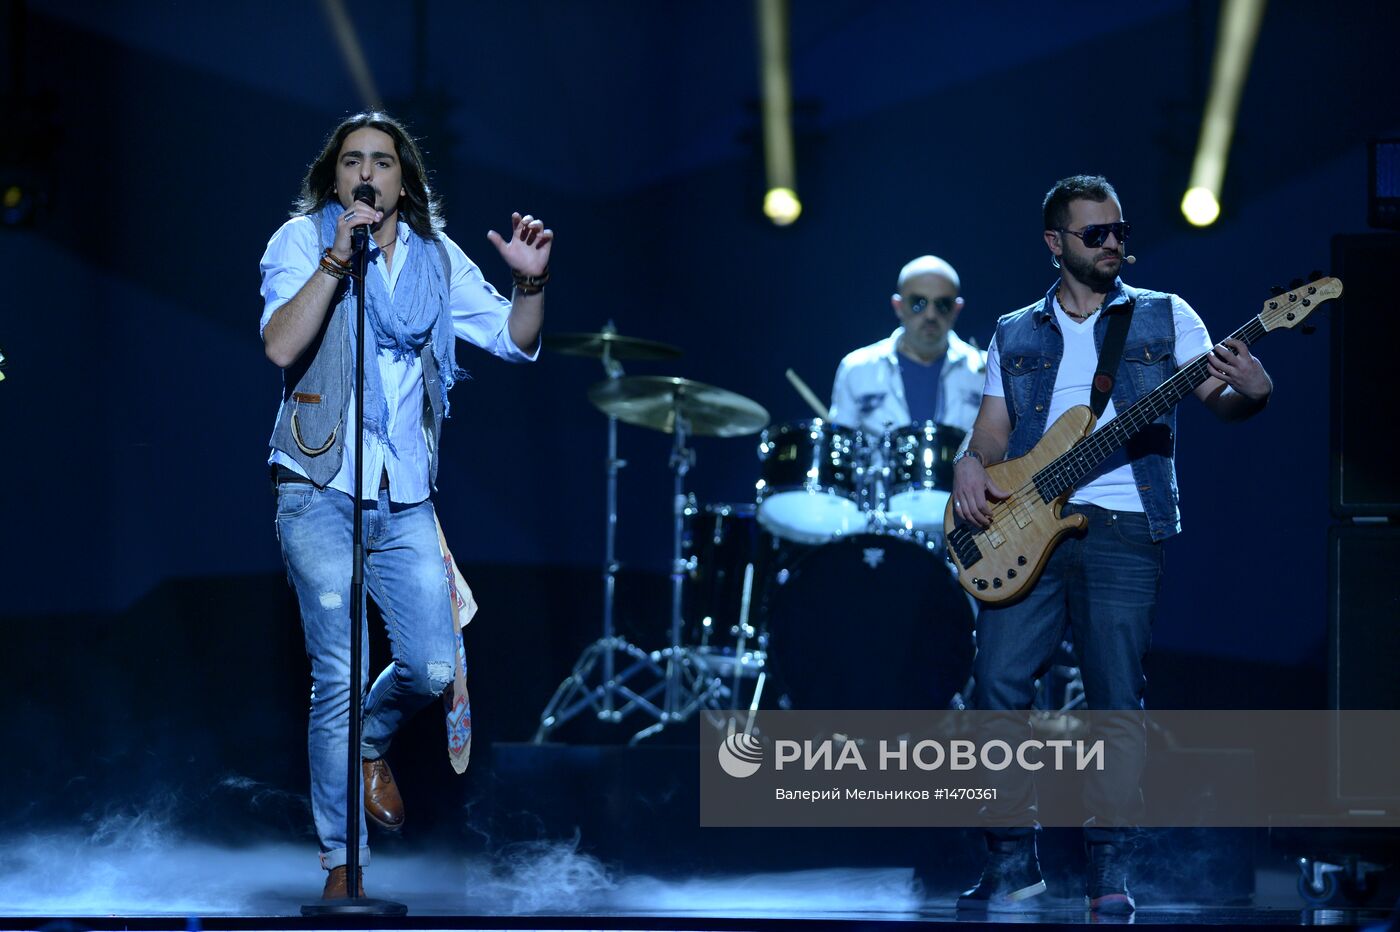 Международный конкурс песни "Евровидение-2013". Второй полуфинал